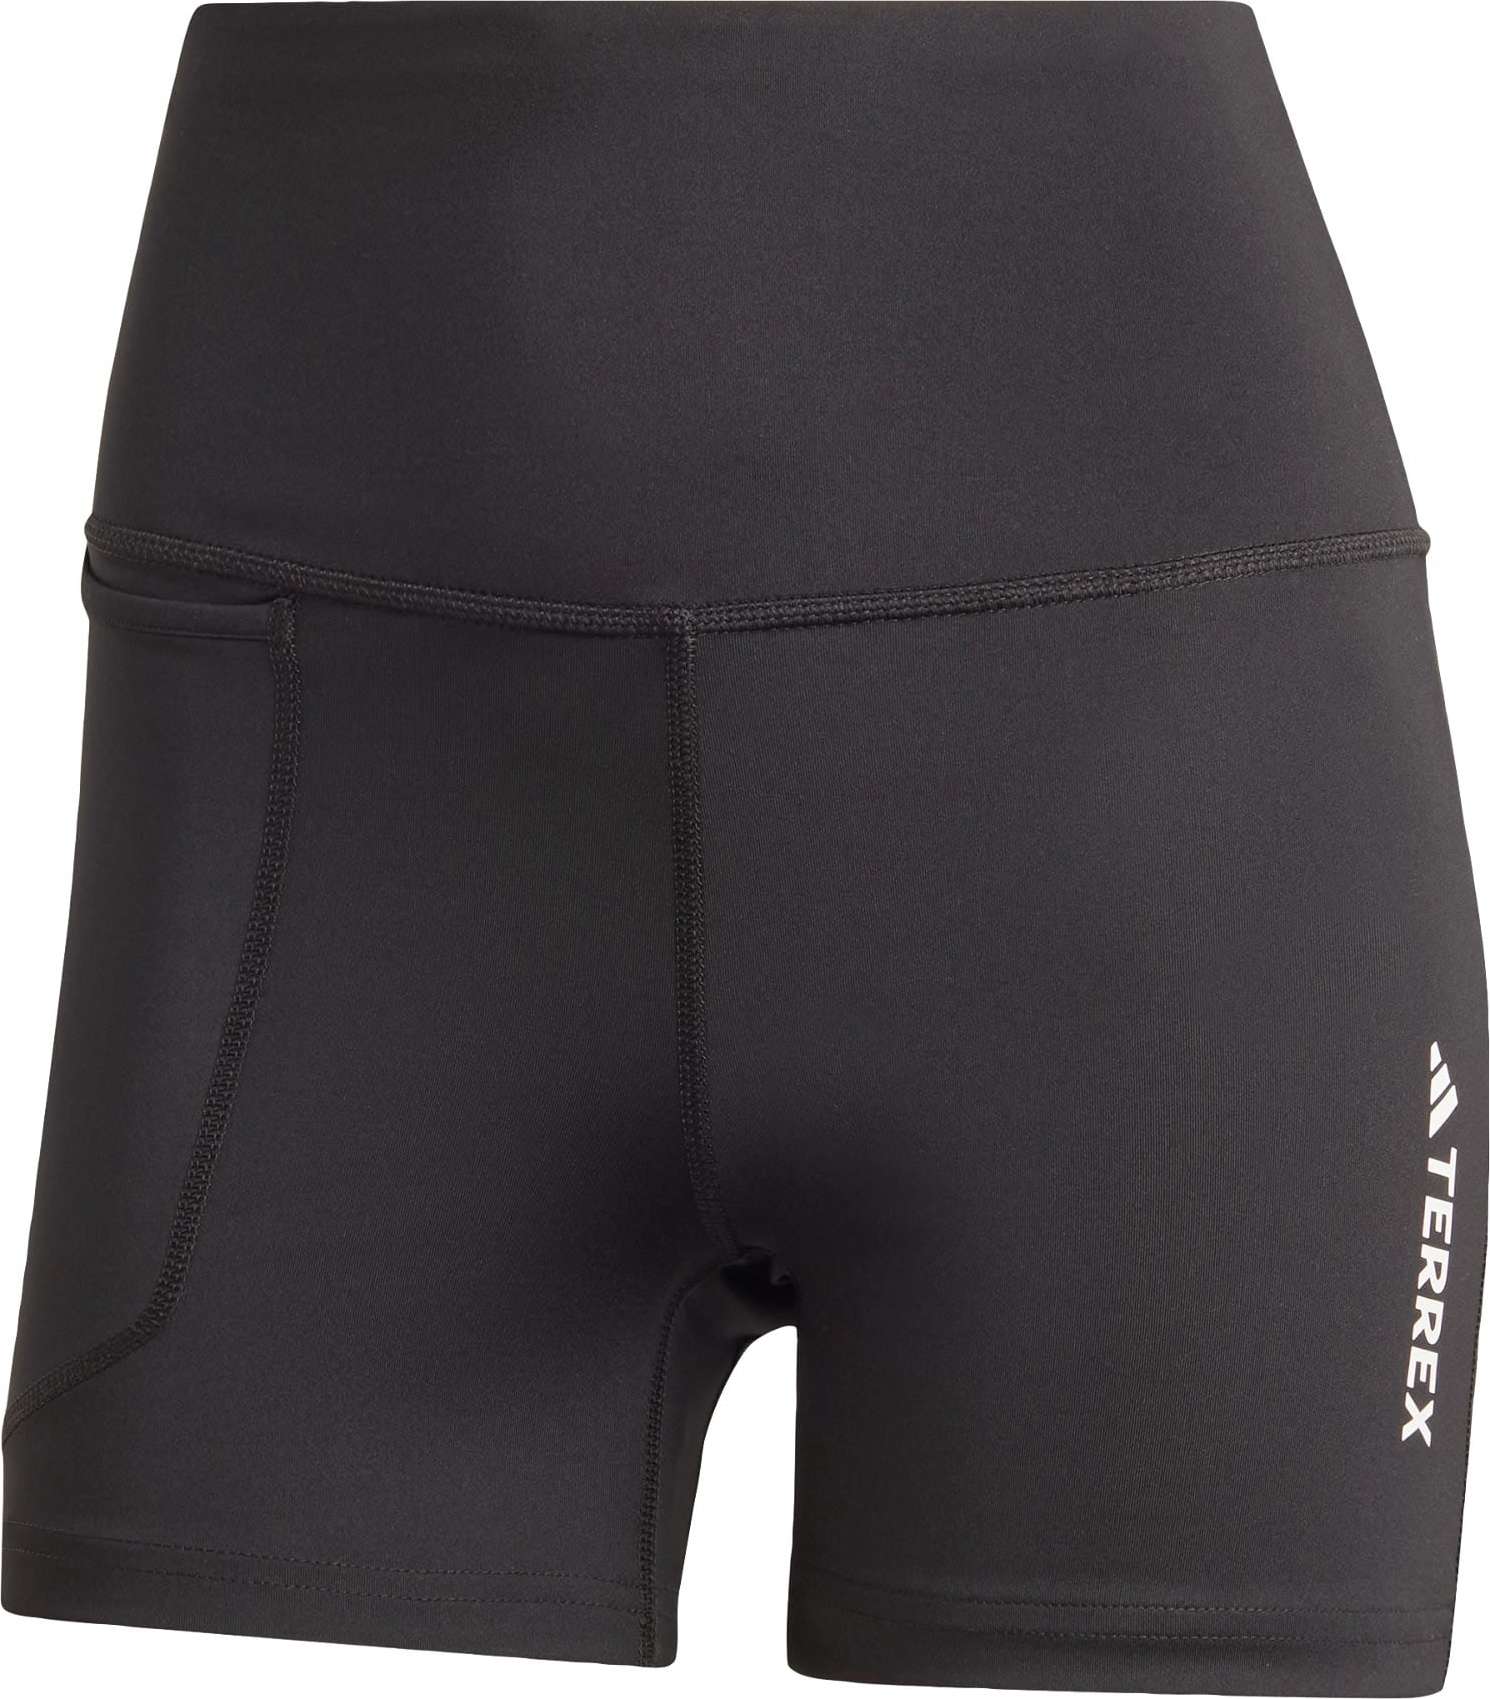 ADIDAS TERREX Sportovní kalhoty černá / bílá